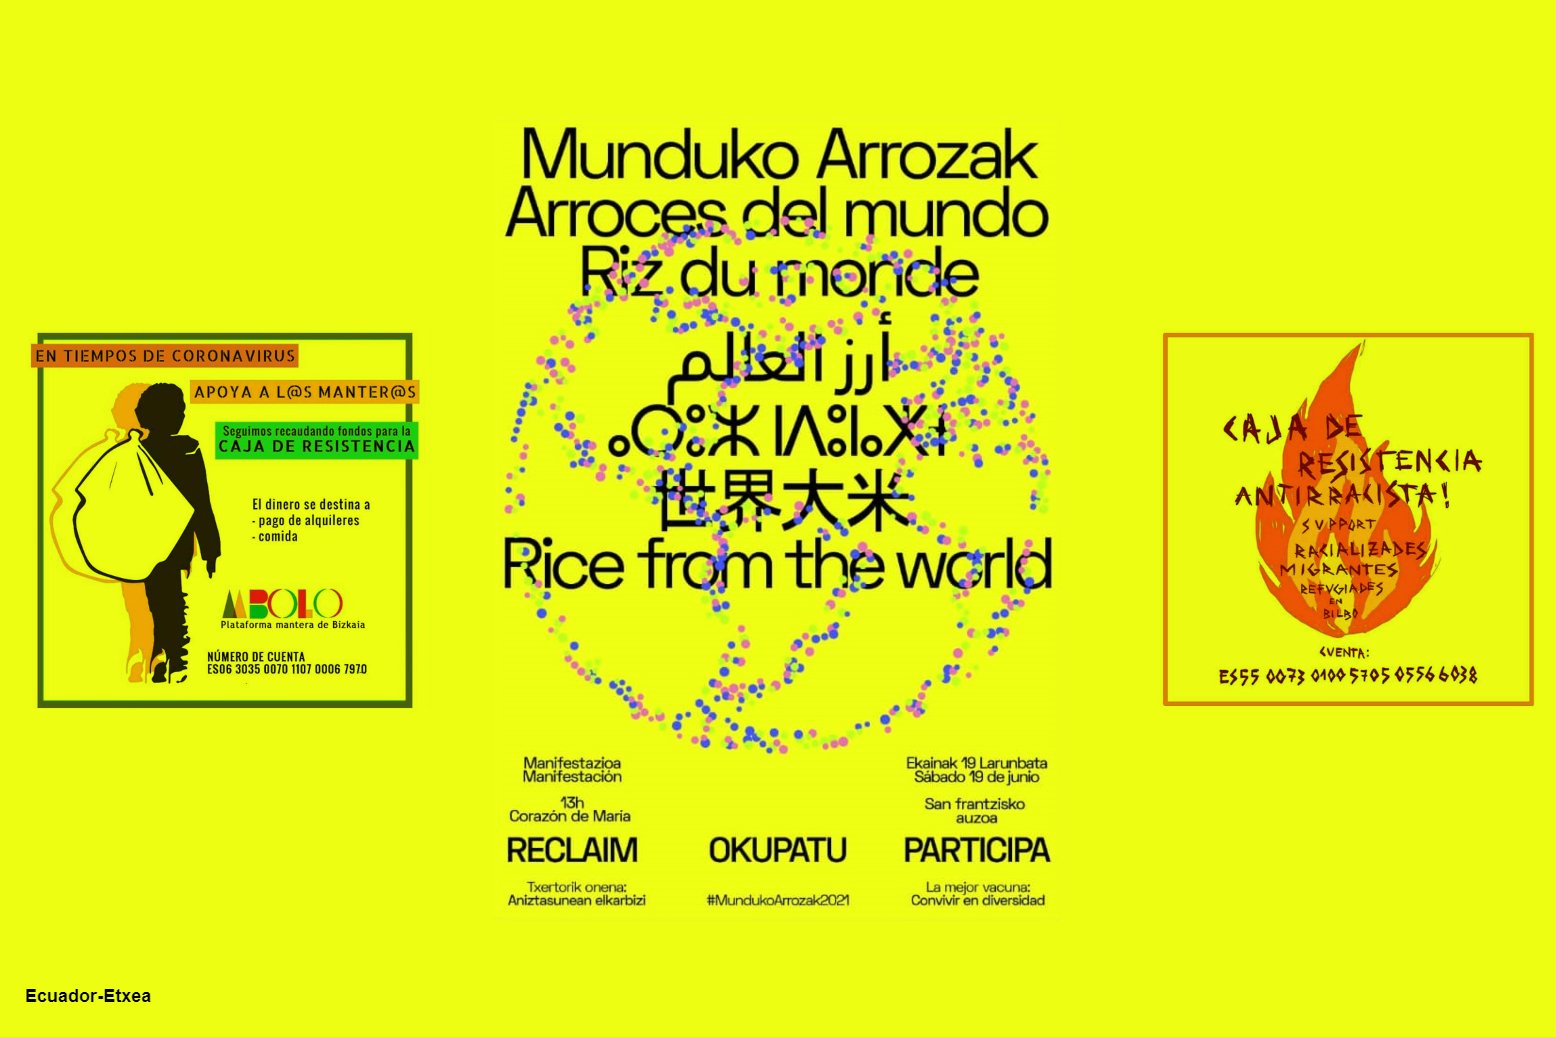 Arroces-Mundo-Bilbao-2021-munduko-arrozak-vacuna-diversidad-solidaridad-apoyo-mutuo-corazón-maría-safrancisco-cajas-resistencia-manteros-racializadas